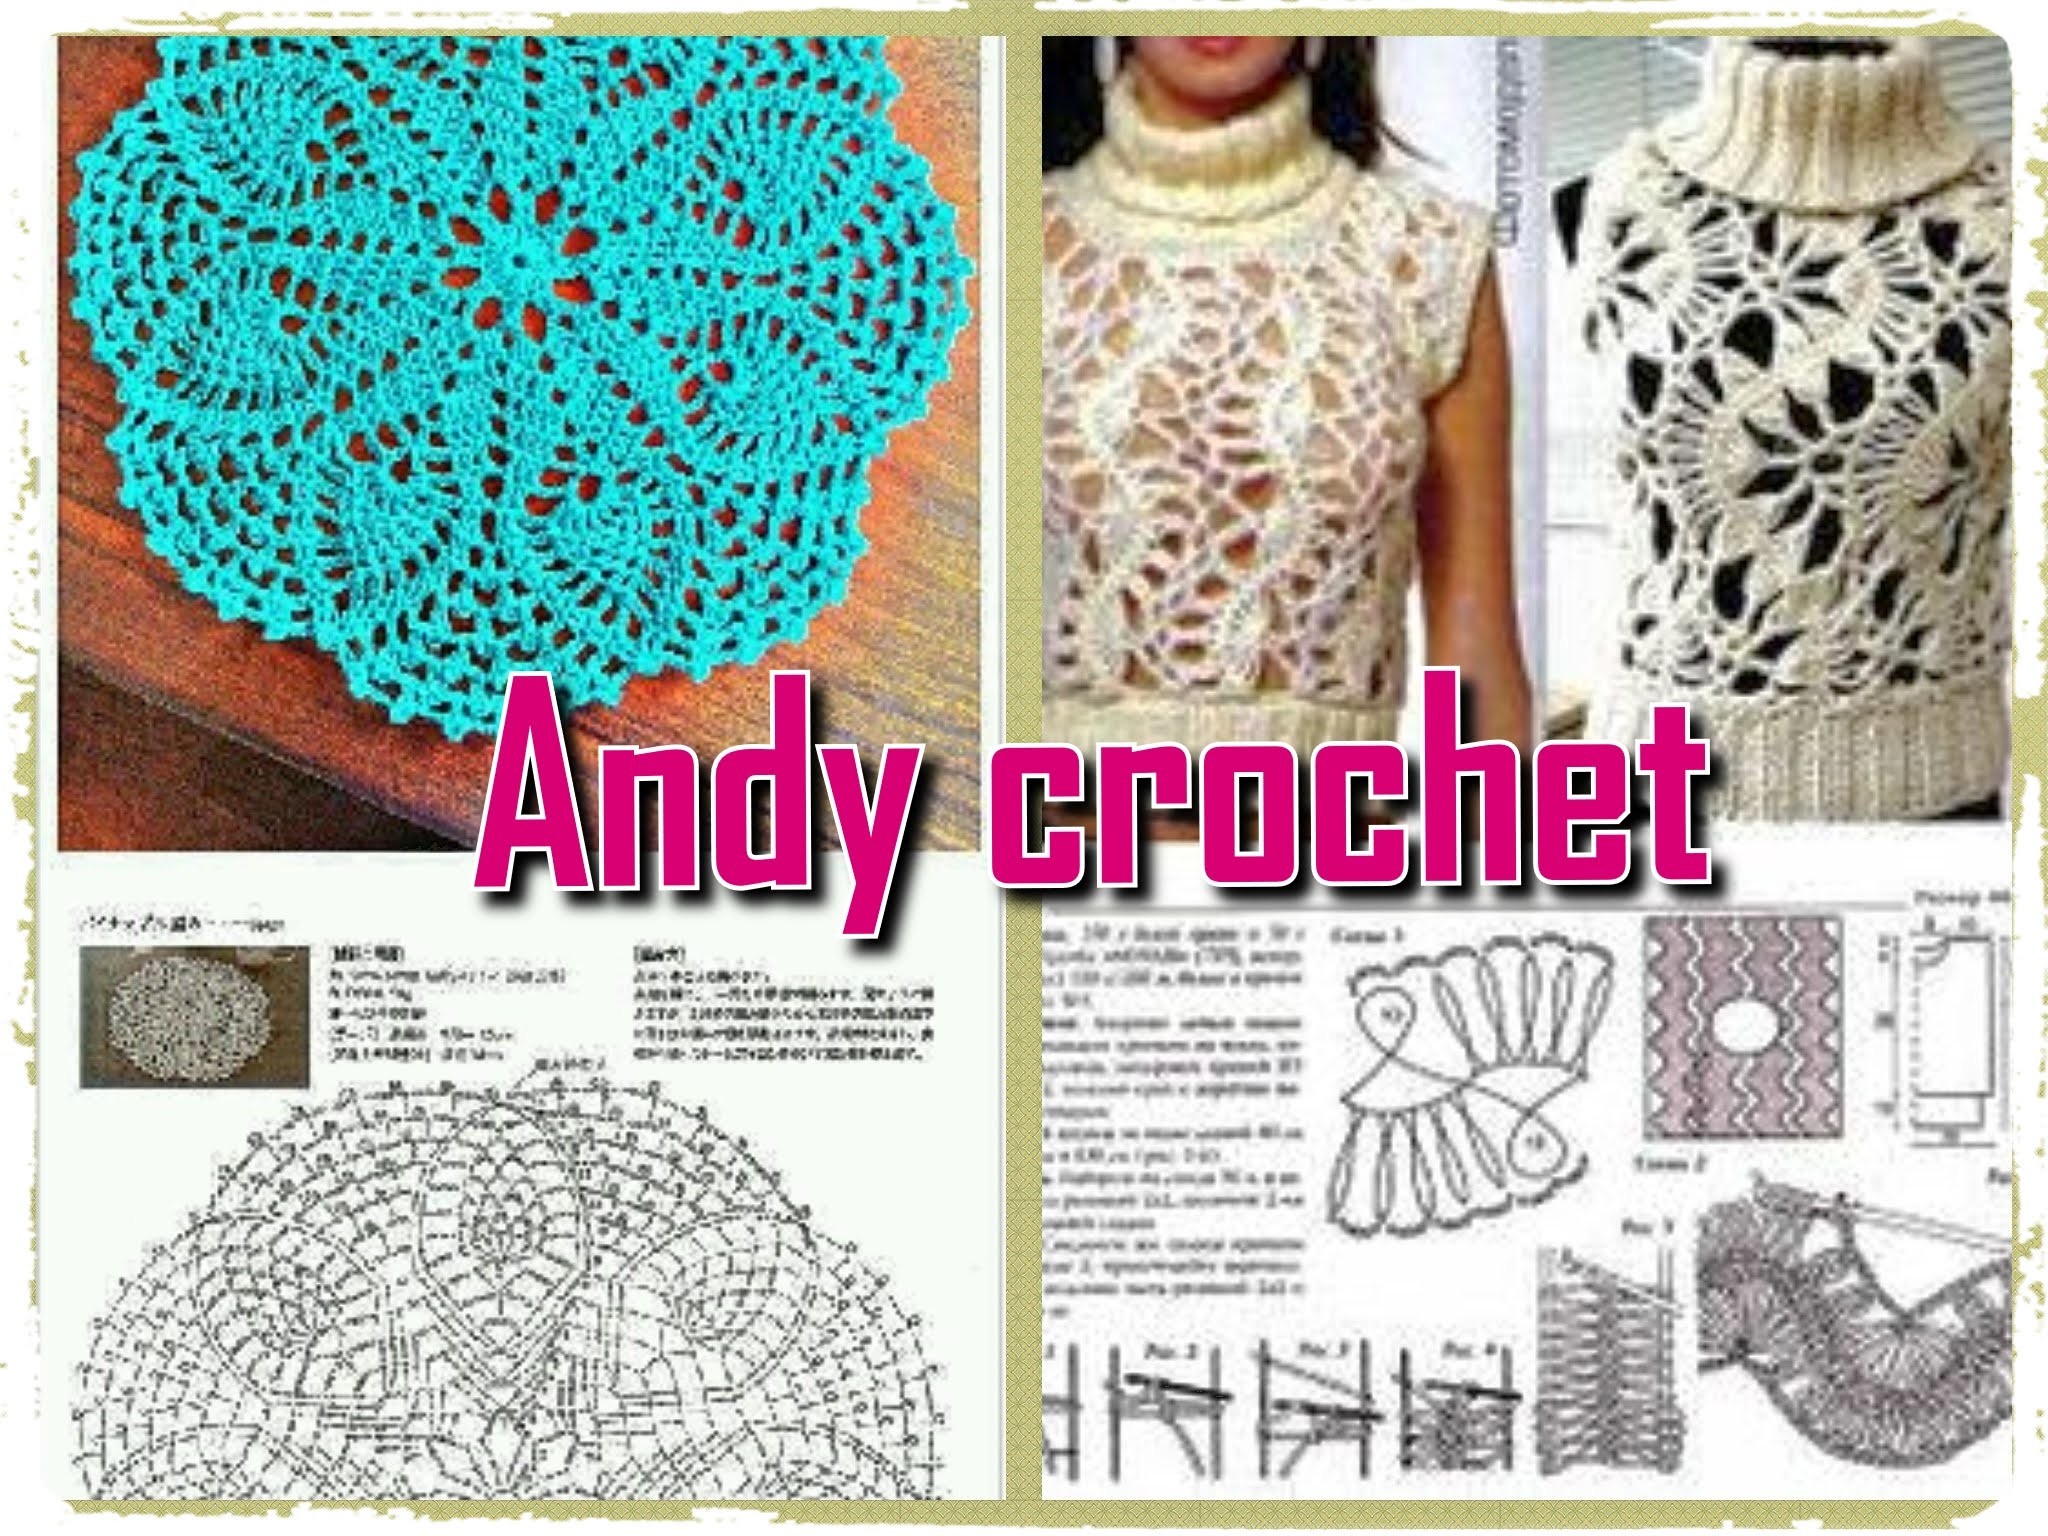 COMO INTERPRETAR ESQUEMAS  EN CROCHET   Andy crochet